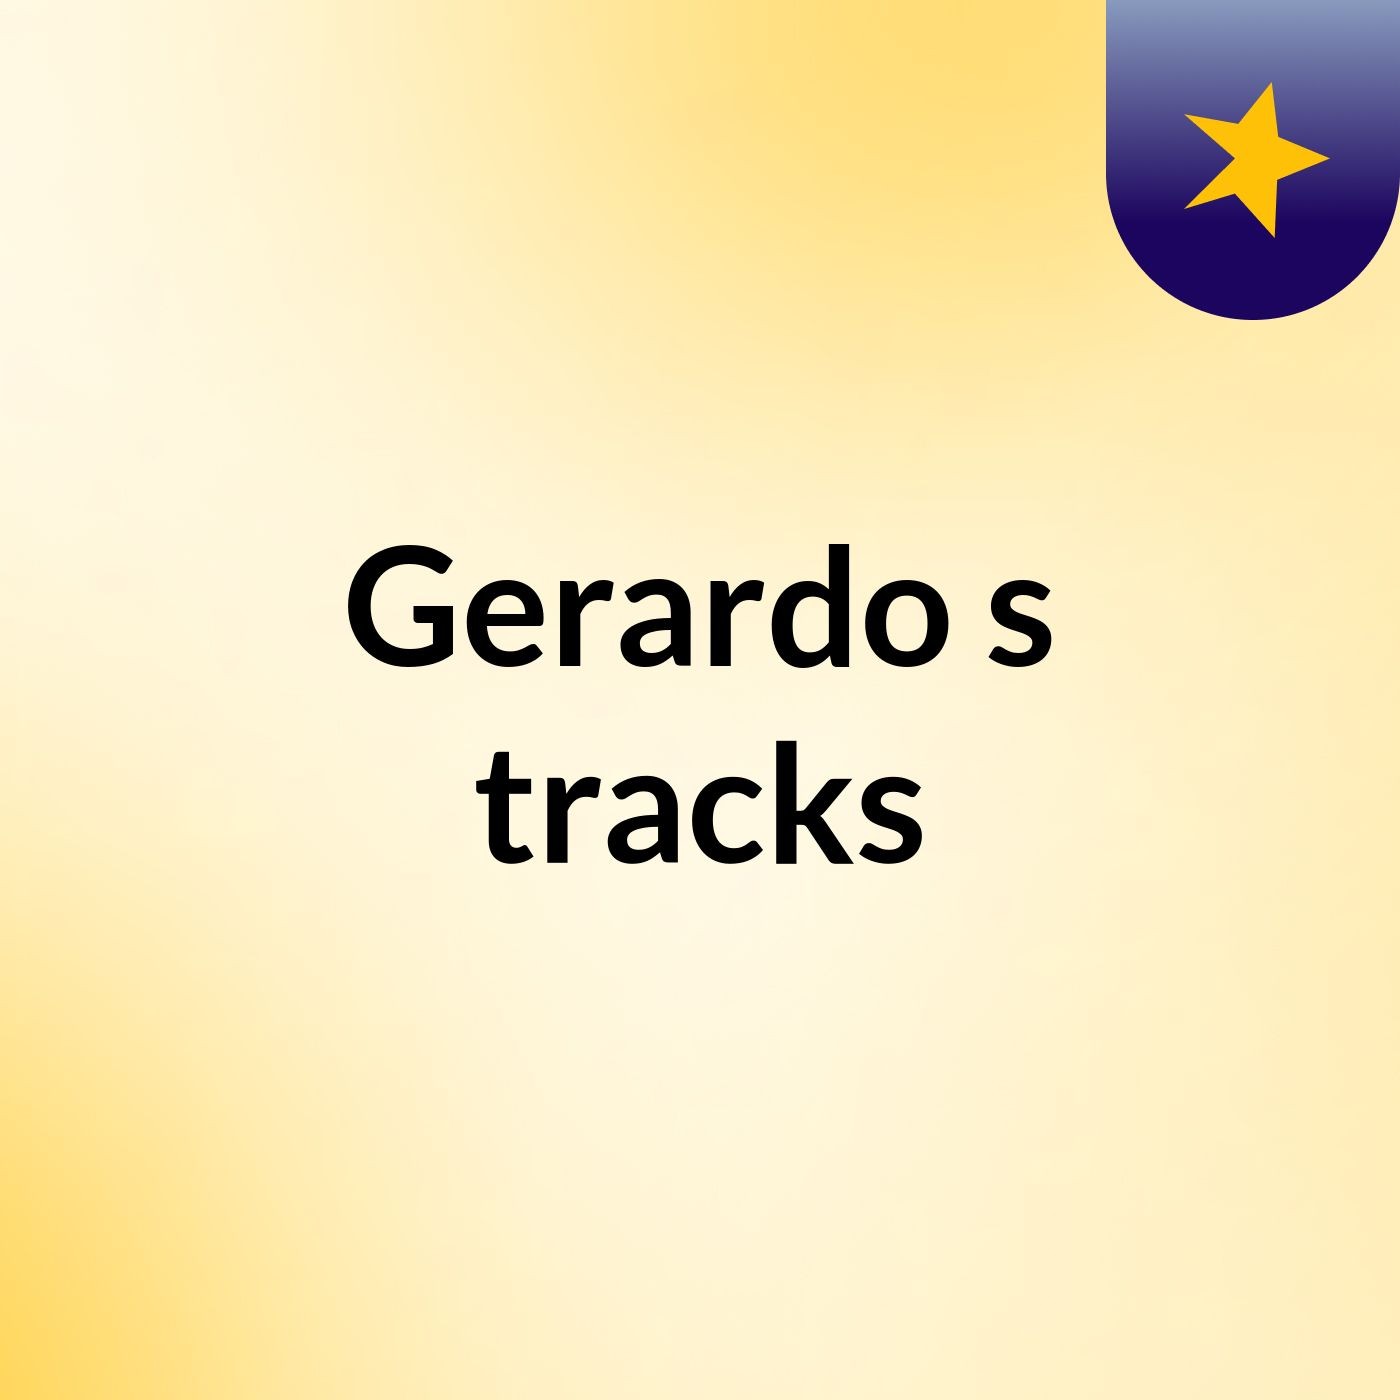 Gerardo's tracks